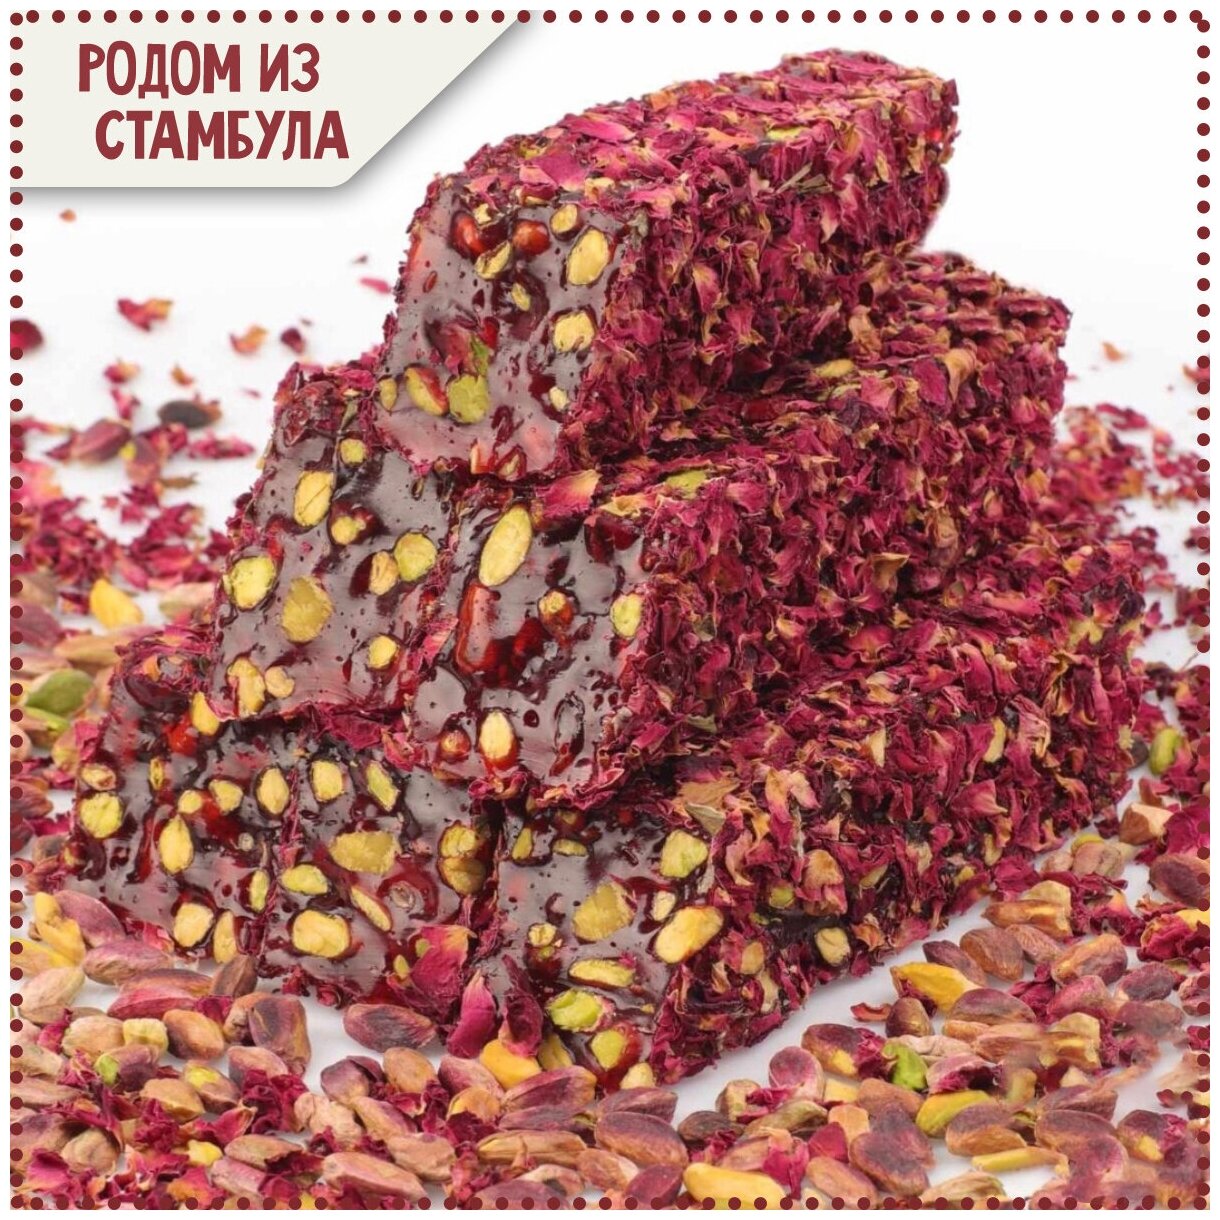 Турецкий Лукум Гранатовый с фисташками в лепестках роз, упаковка 300 грам.